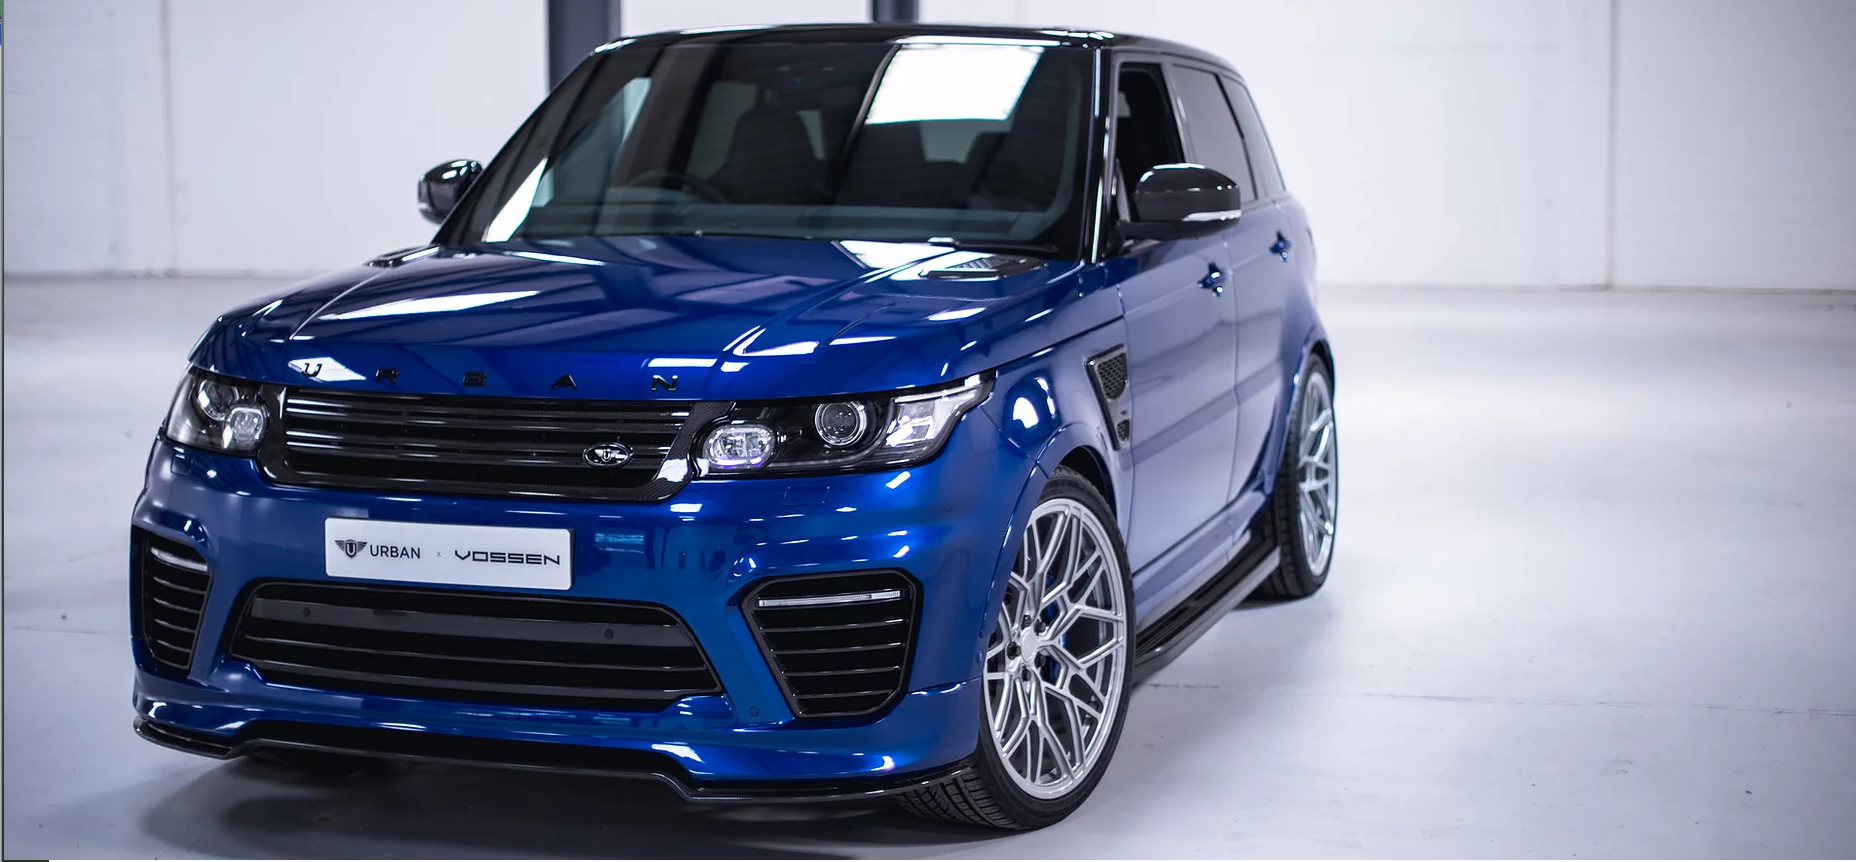 Urban  body kit for Range Rover Sport & SVR new style